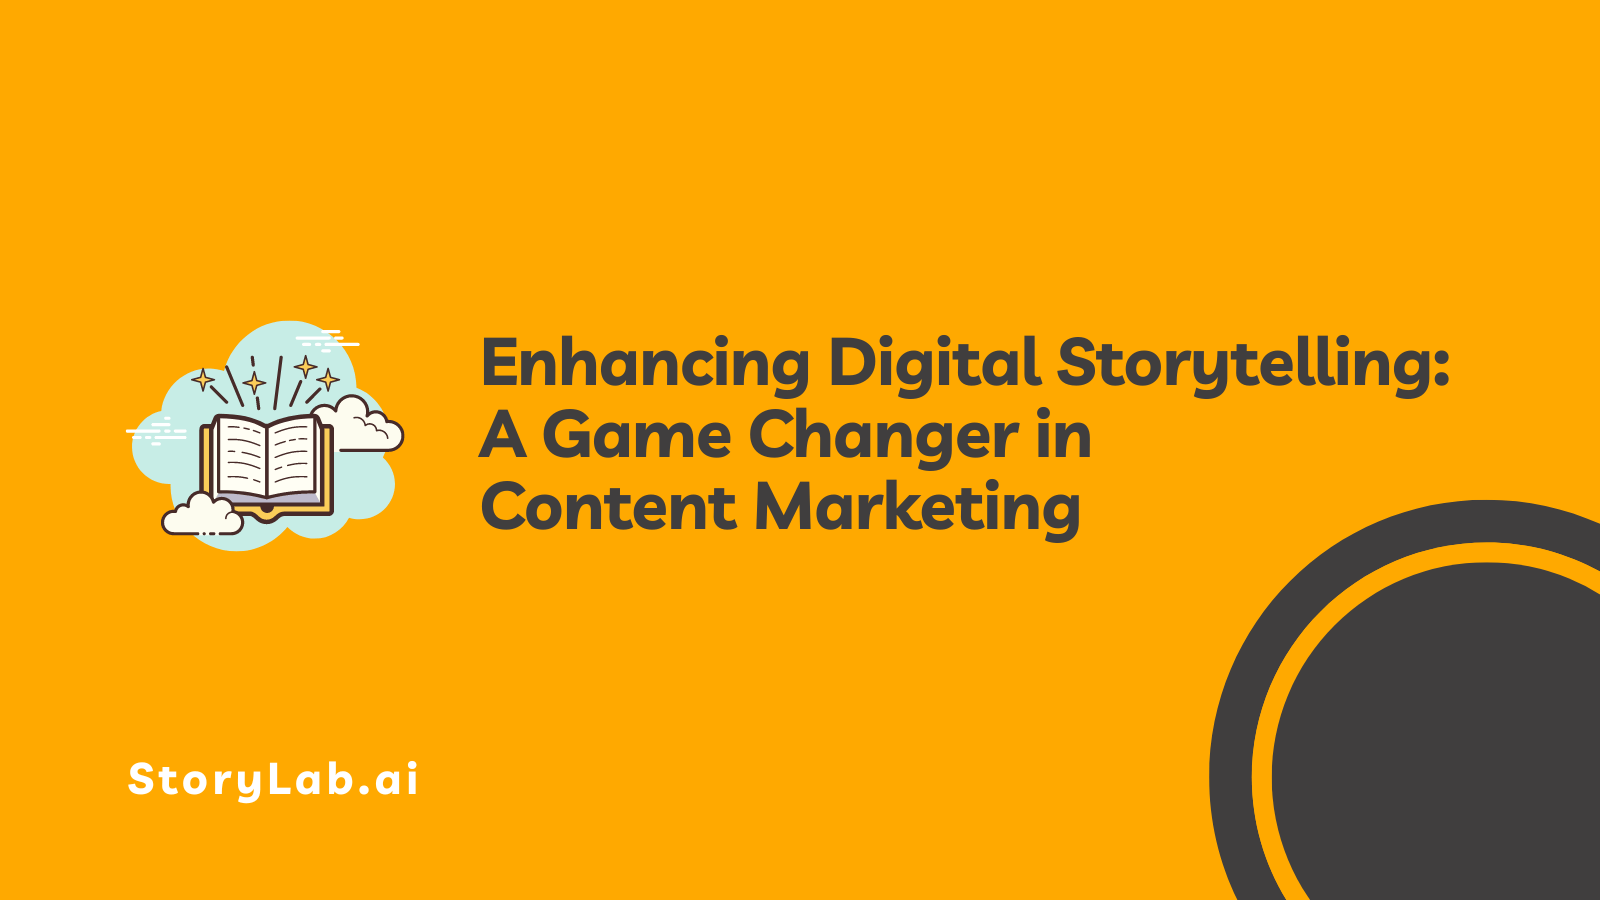 Aprimorando a narrativa digital, uma virada de jogo no marketing de conteúdo